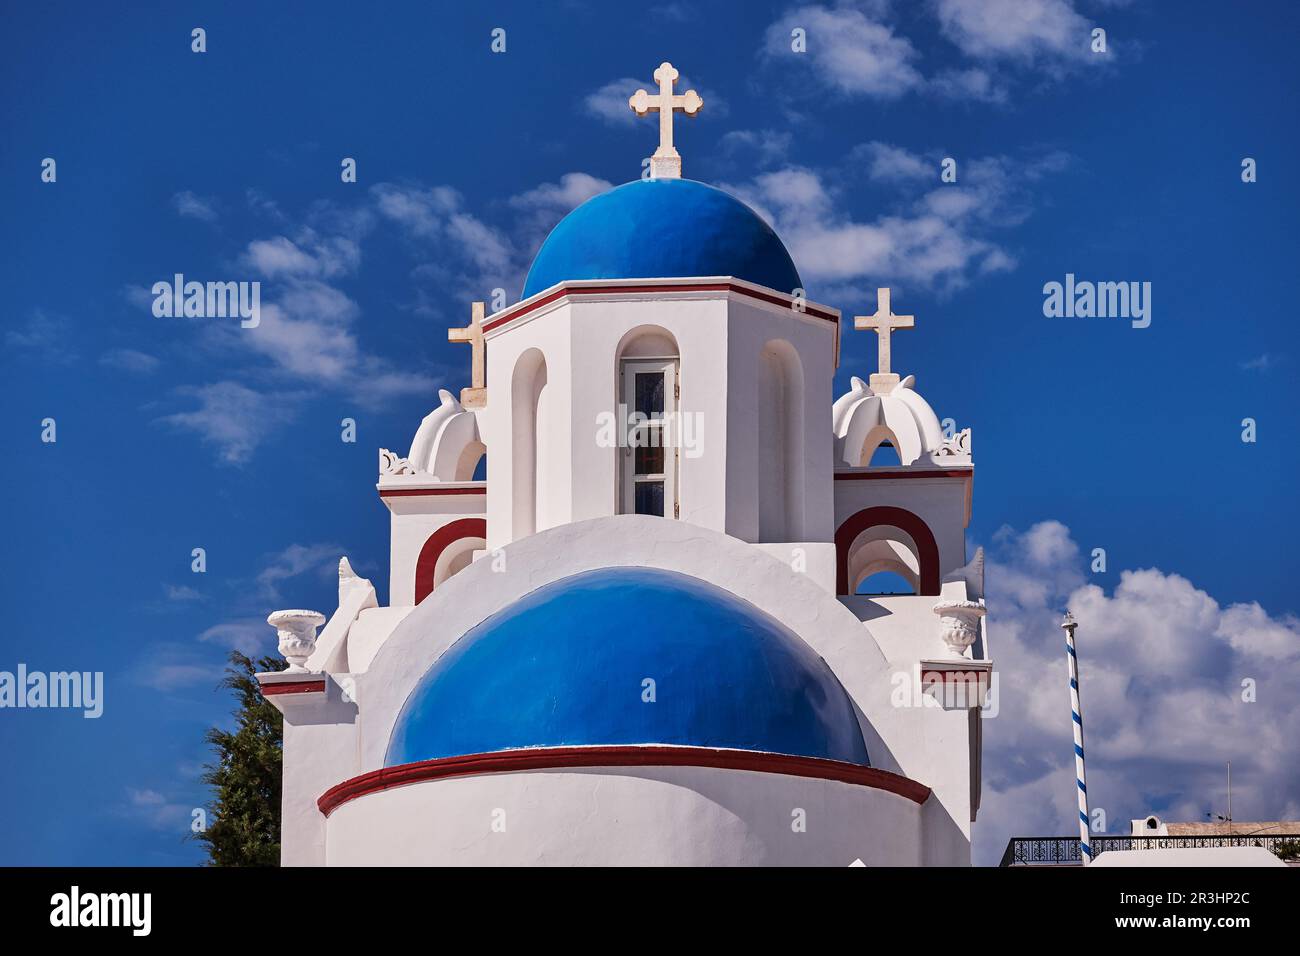 Petite église avec son dôme bleu - Fira, Santorini, Grèce - magnifique ciel bleu Banque D'Images